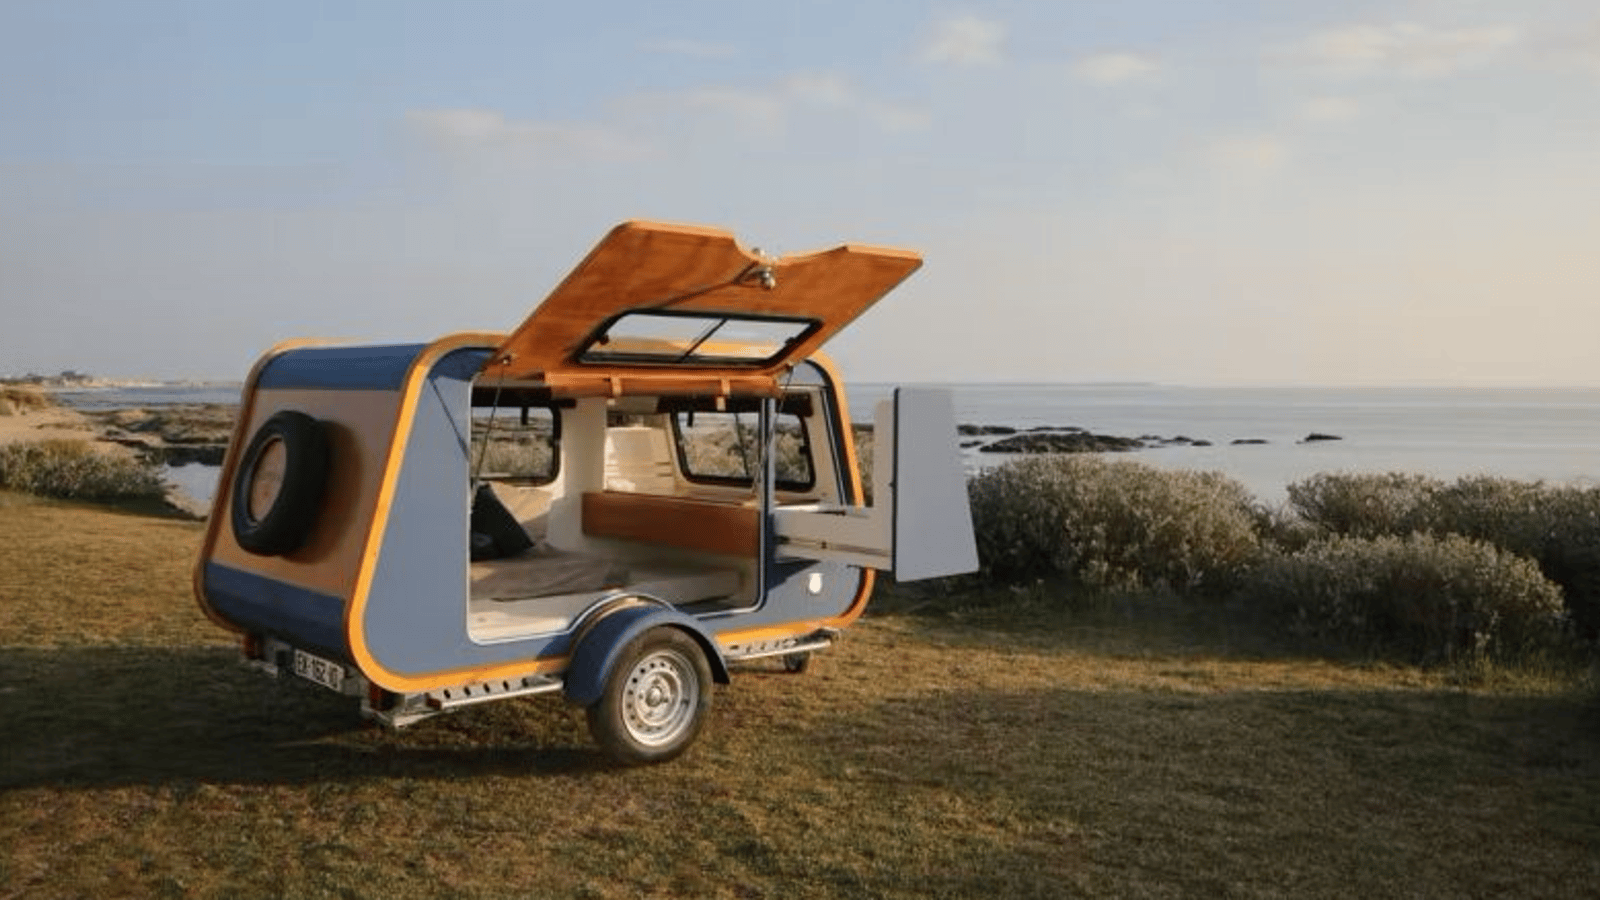 Voici deux nouveaux modèles de camping-car qui feront rêver les amateurs de roatrip